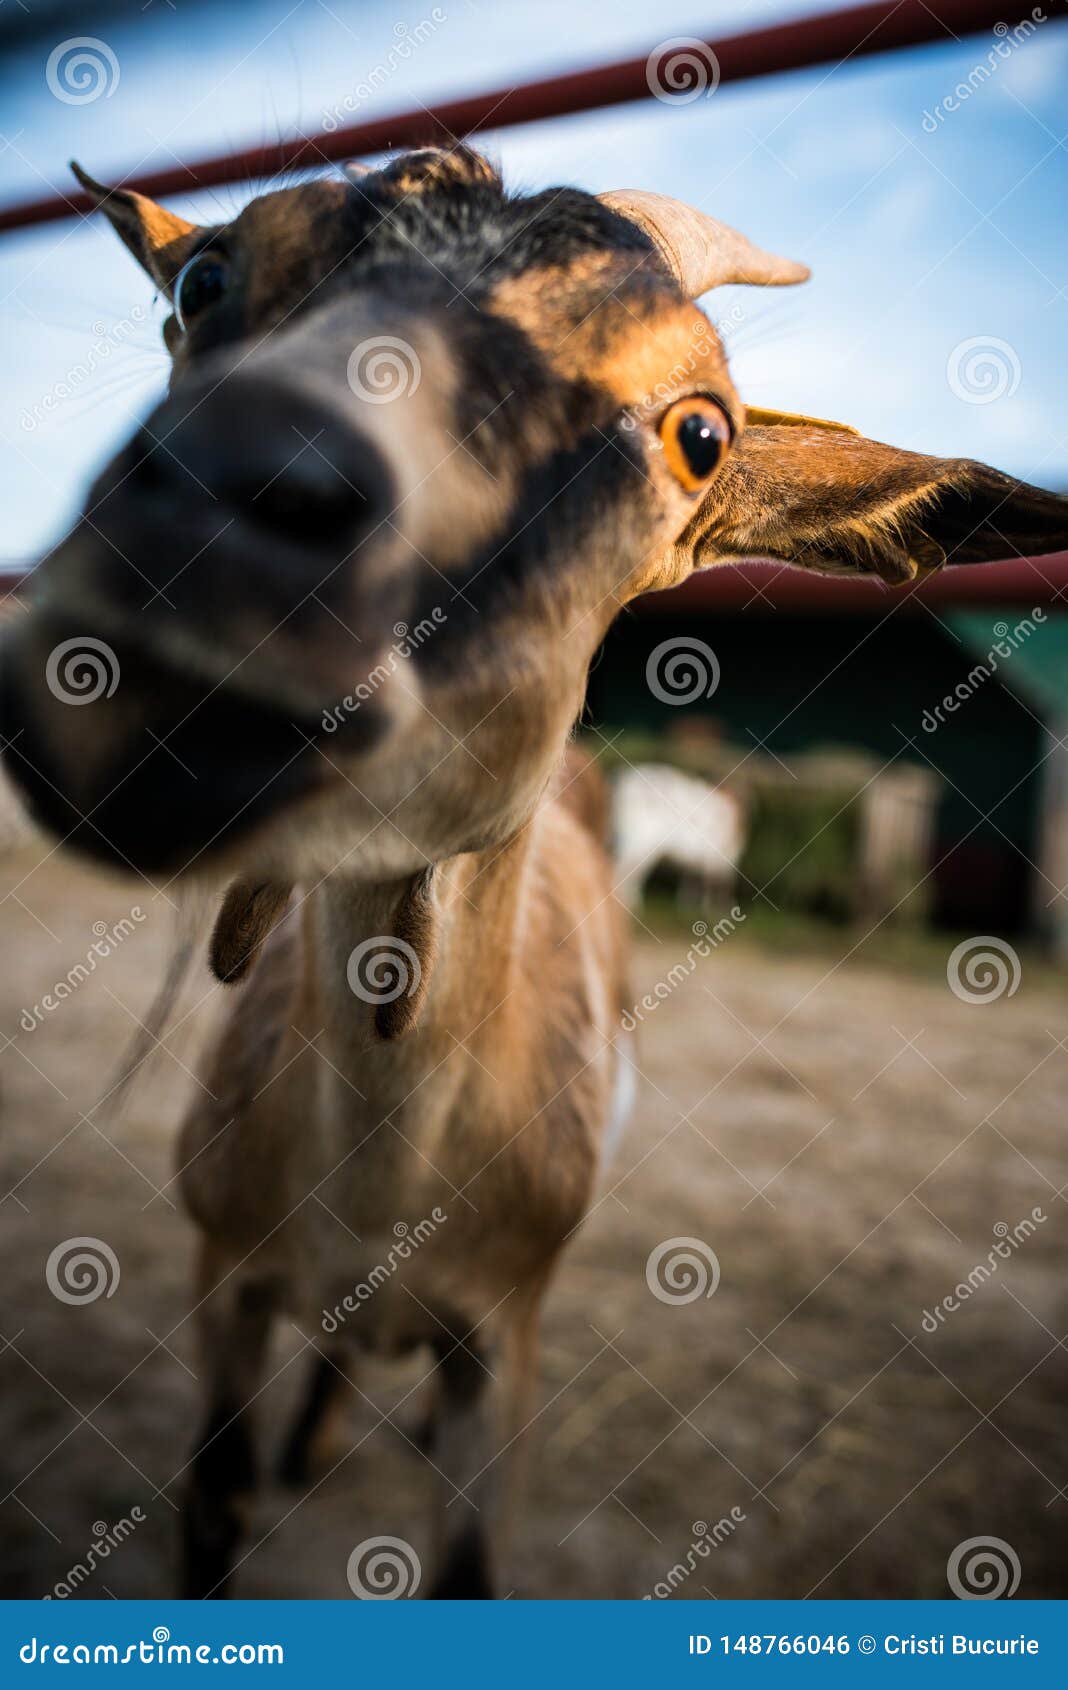 funny expressive goat closeup portrait